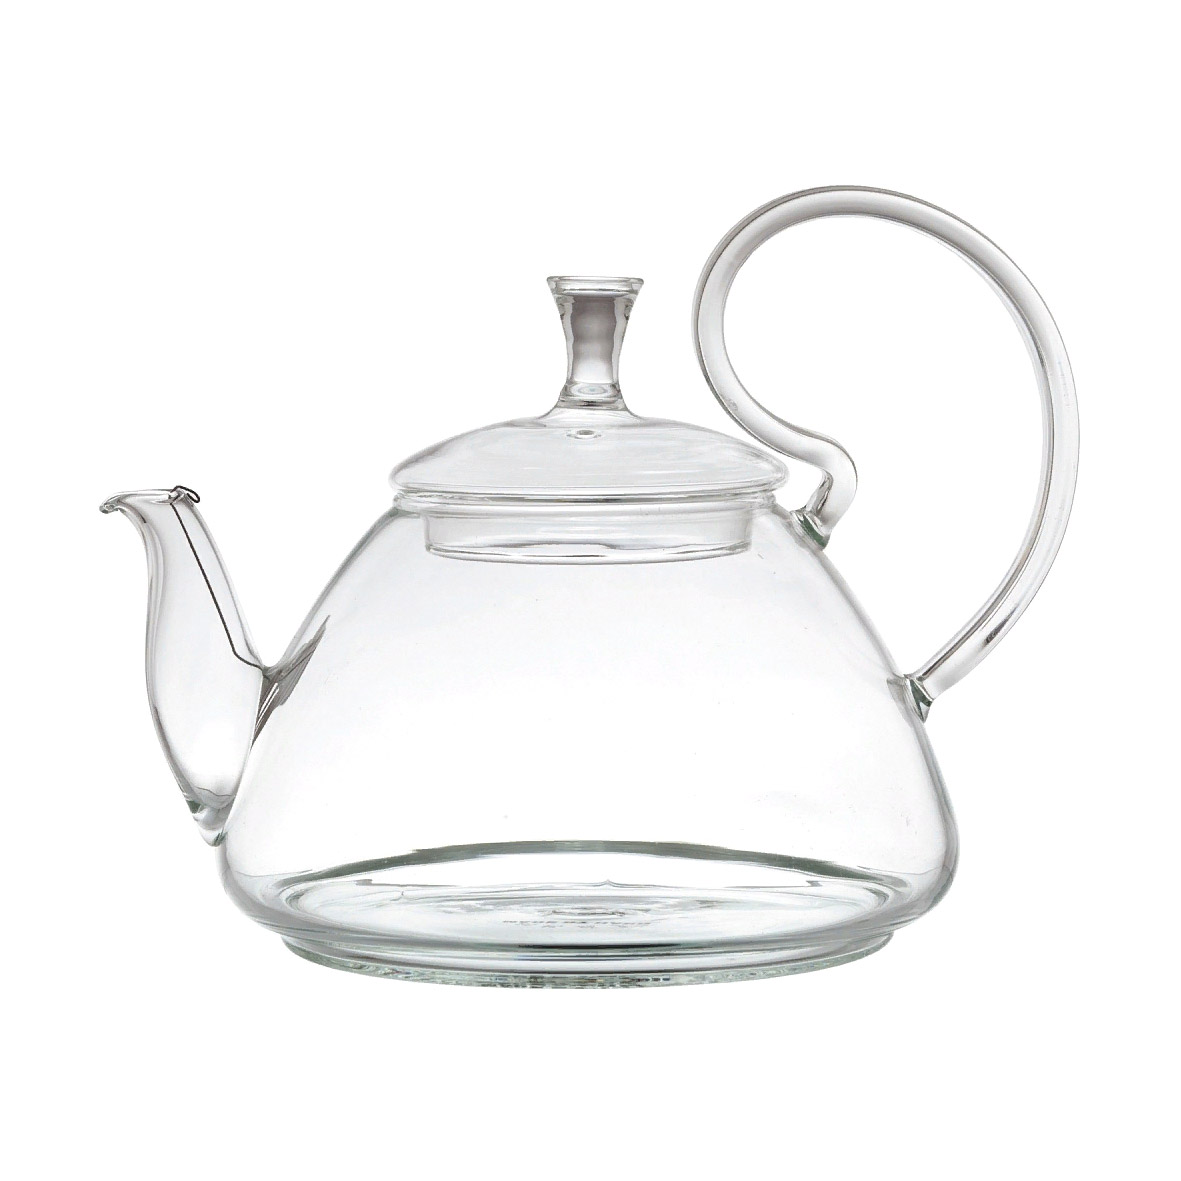 Чайник заварочный Wilmax Thermo WL-888818 1,2 л чайник заварочный profi cook pc tk 1165 1100 вт серебристый прозрачный 0 5 л стекло